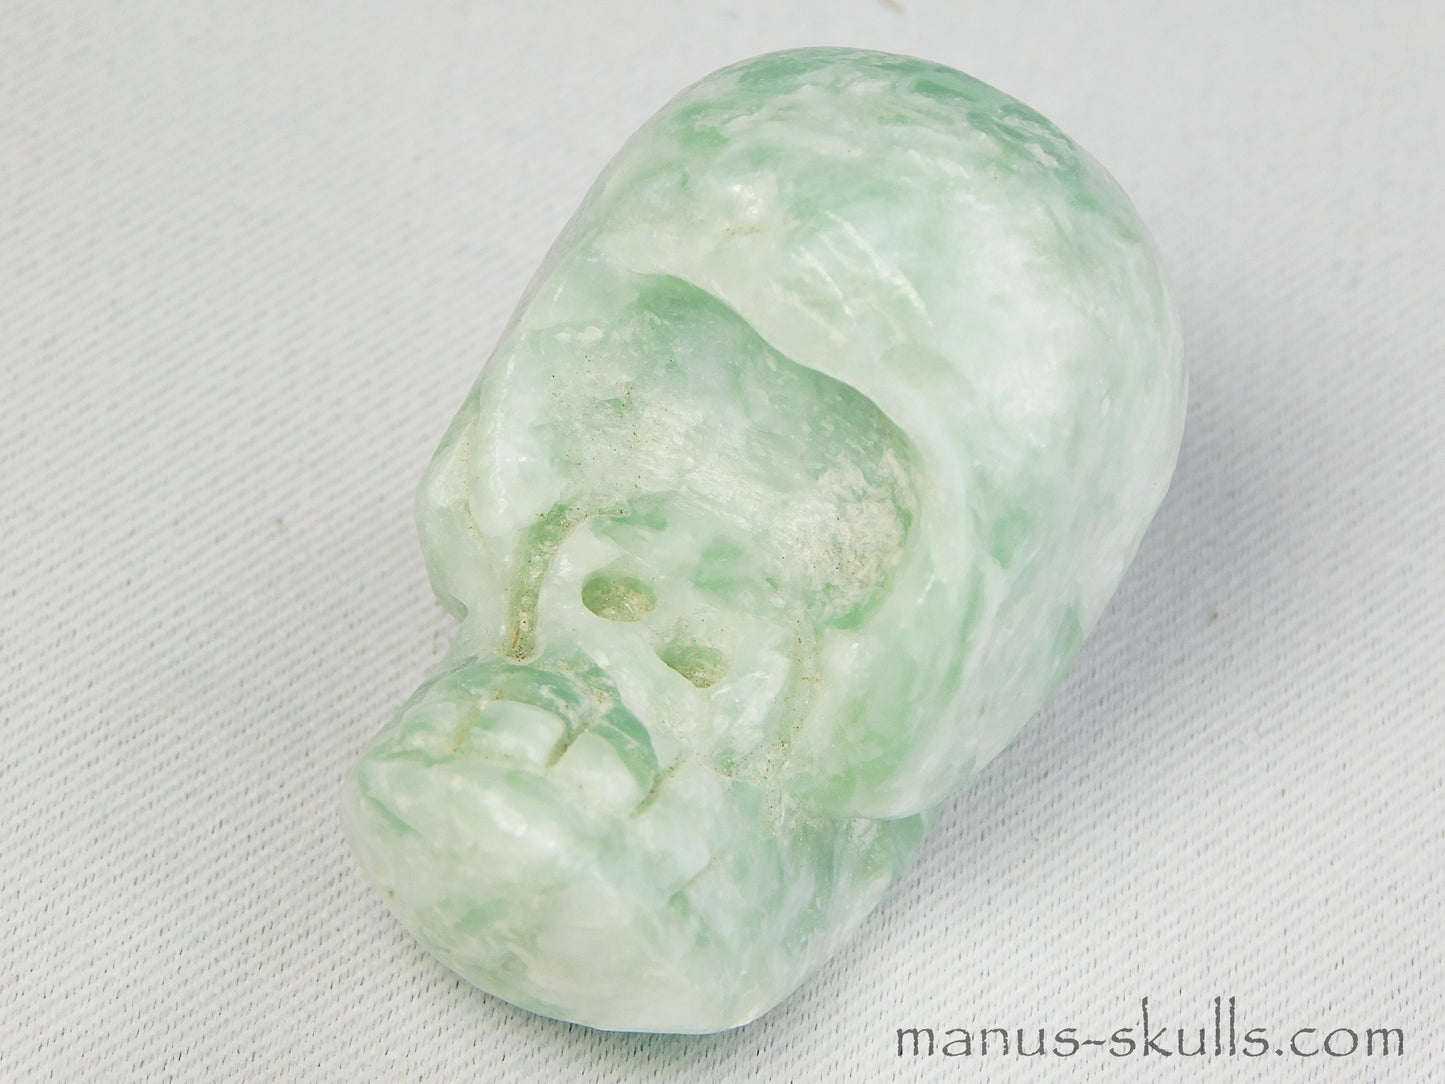 Green Steatite Evolian Skull #26